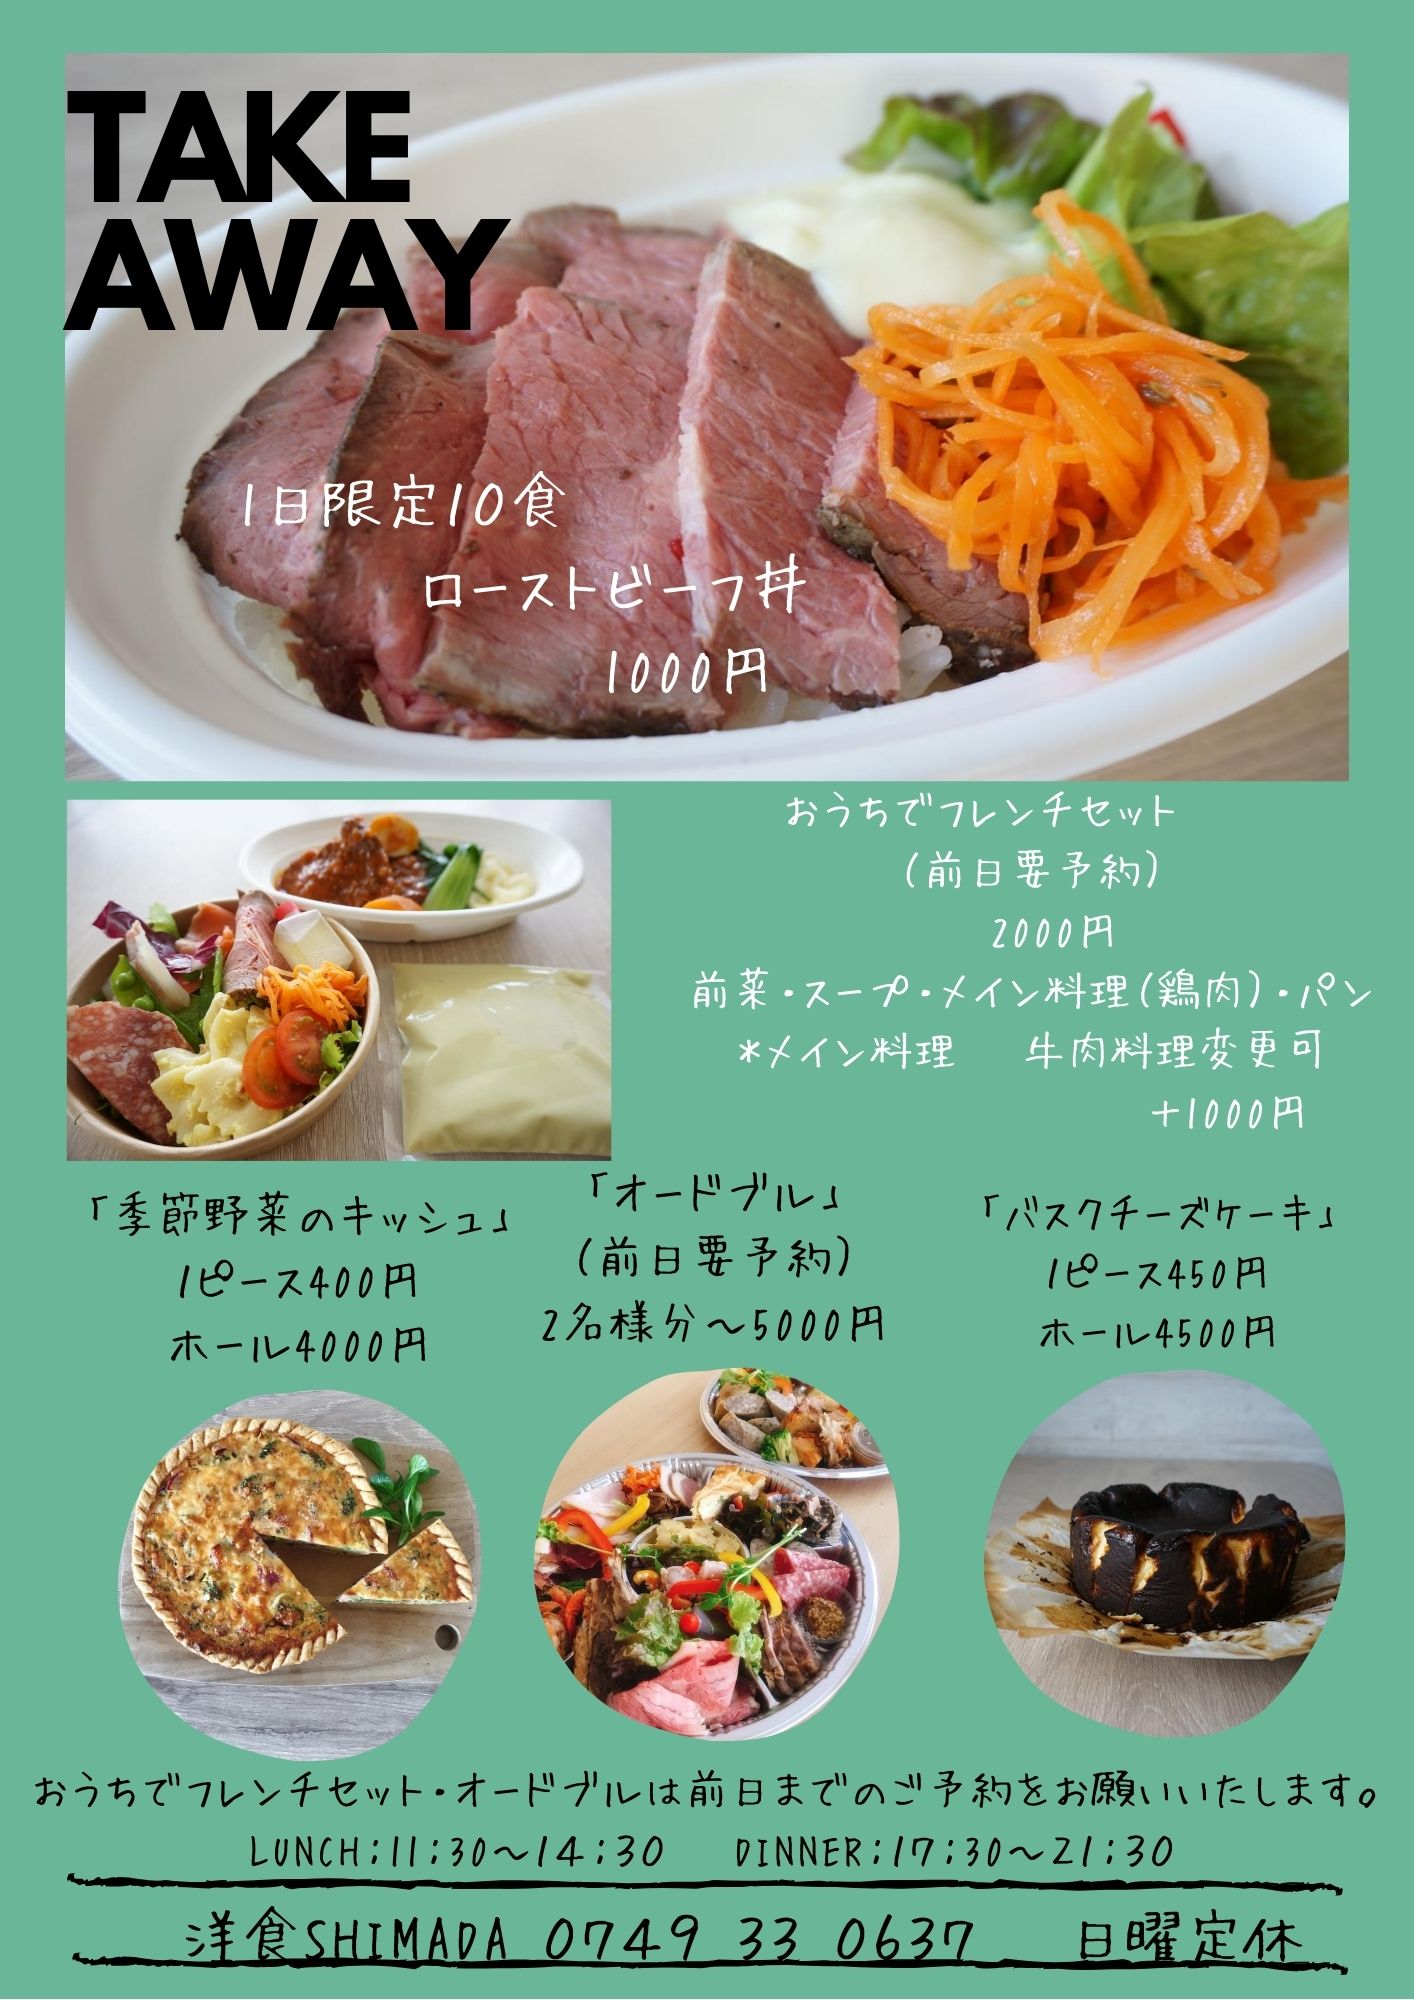 洋食 Shimada 洋食shimada テイクアウトメニュー 1日限定10食 ローストビーフ丼